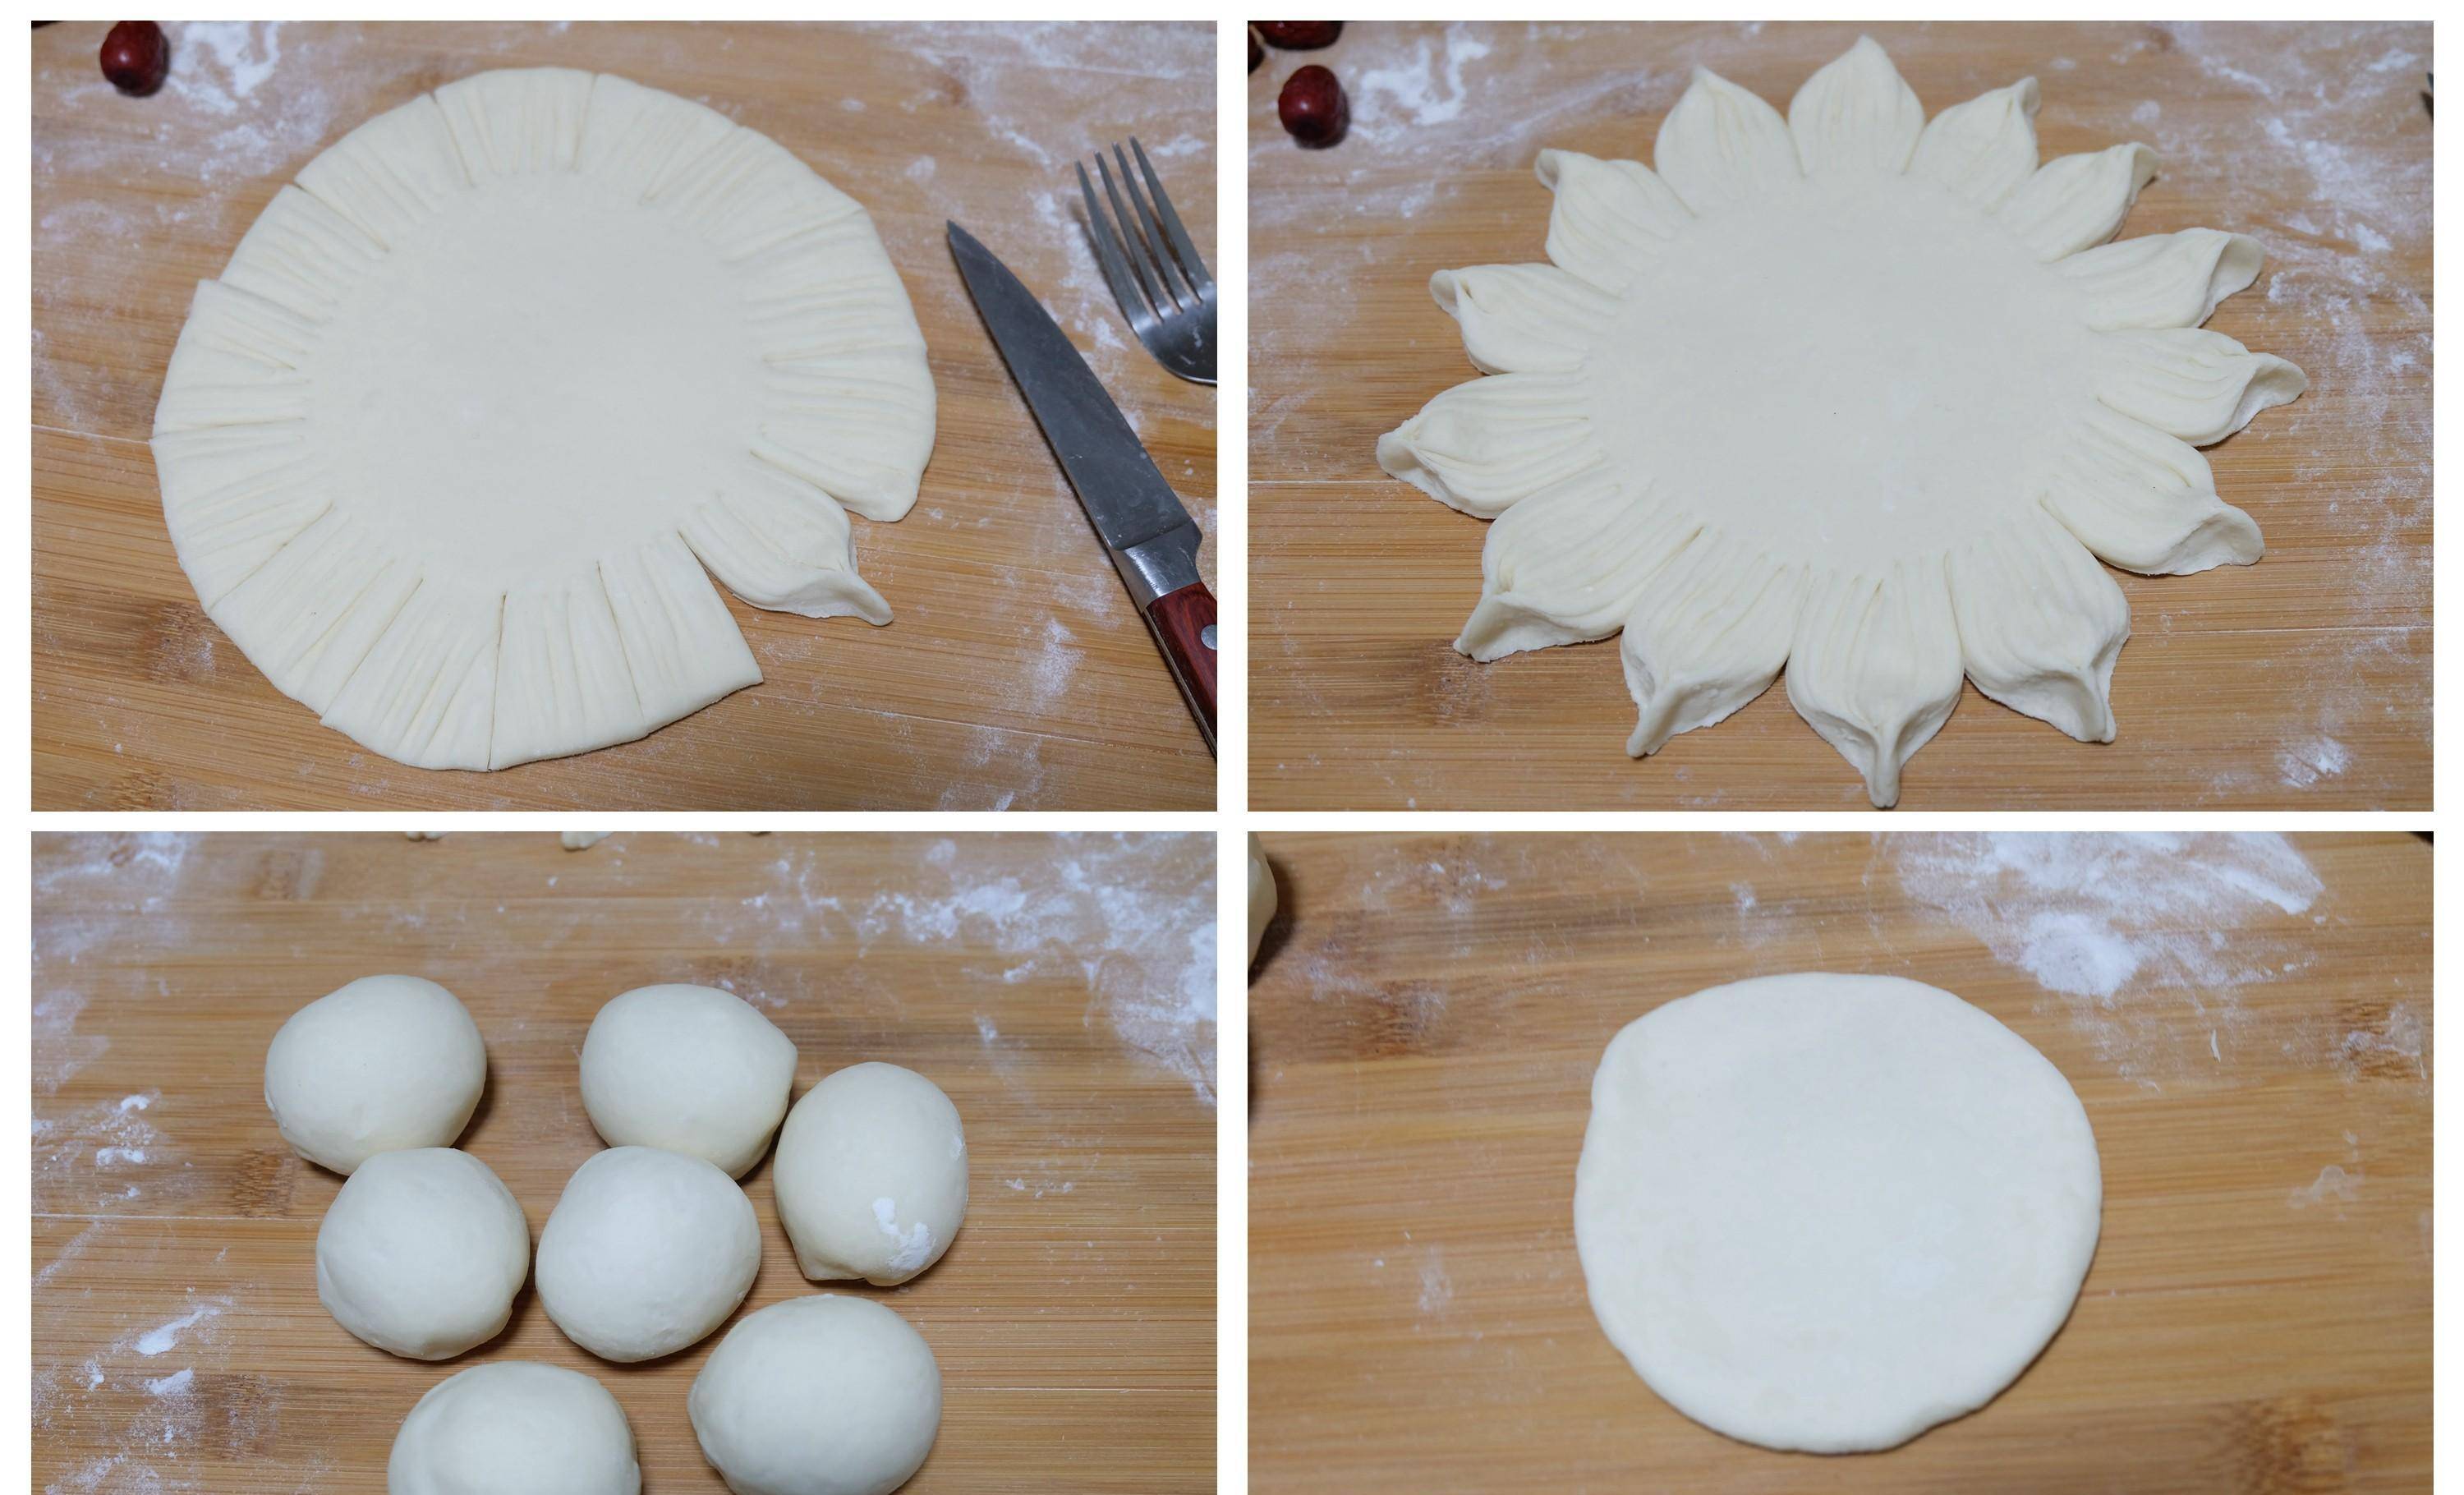 步骤4:先把面团切出一块,重300g左右,揉圆后擀成一圆形的饼,这个是做